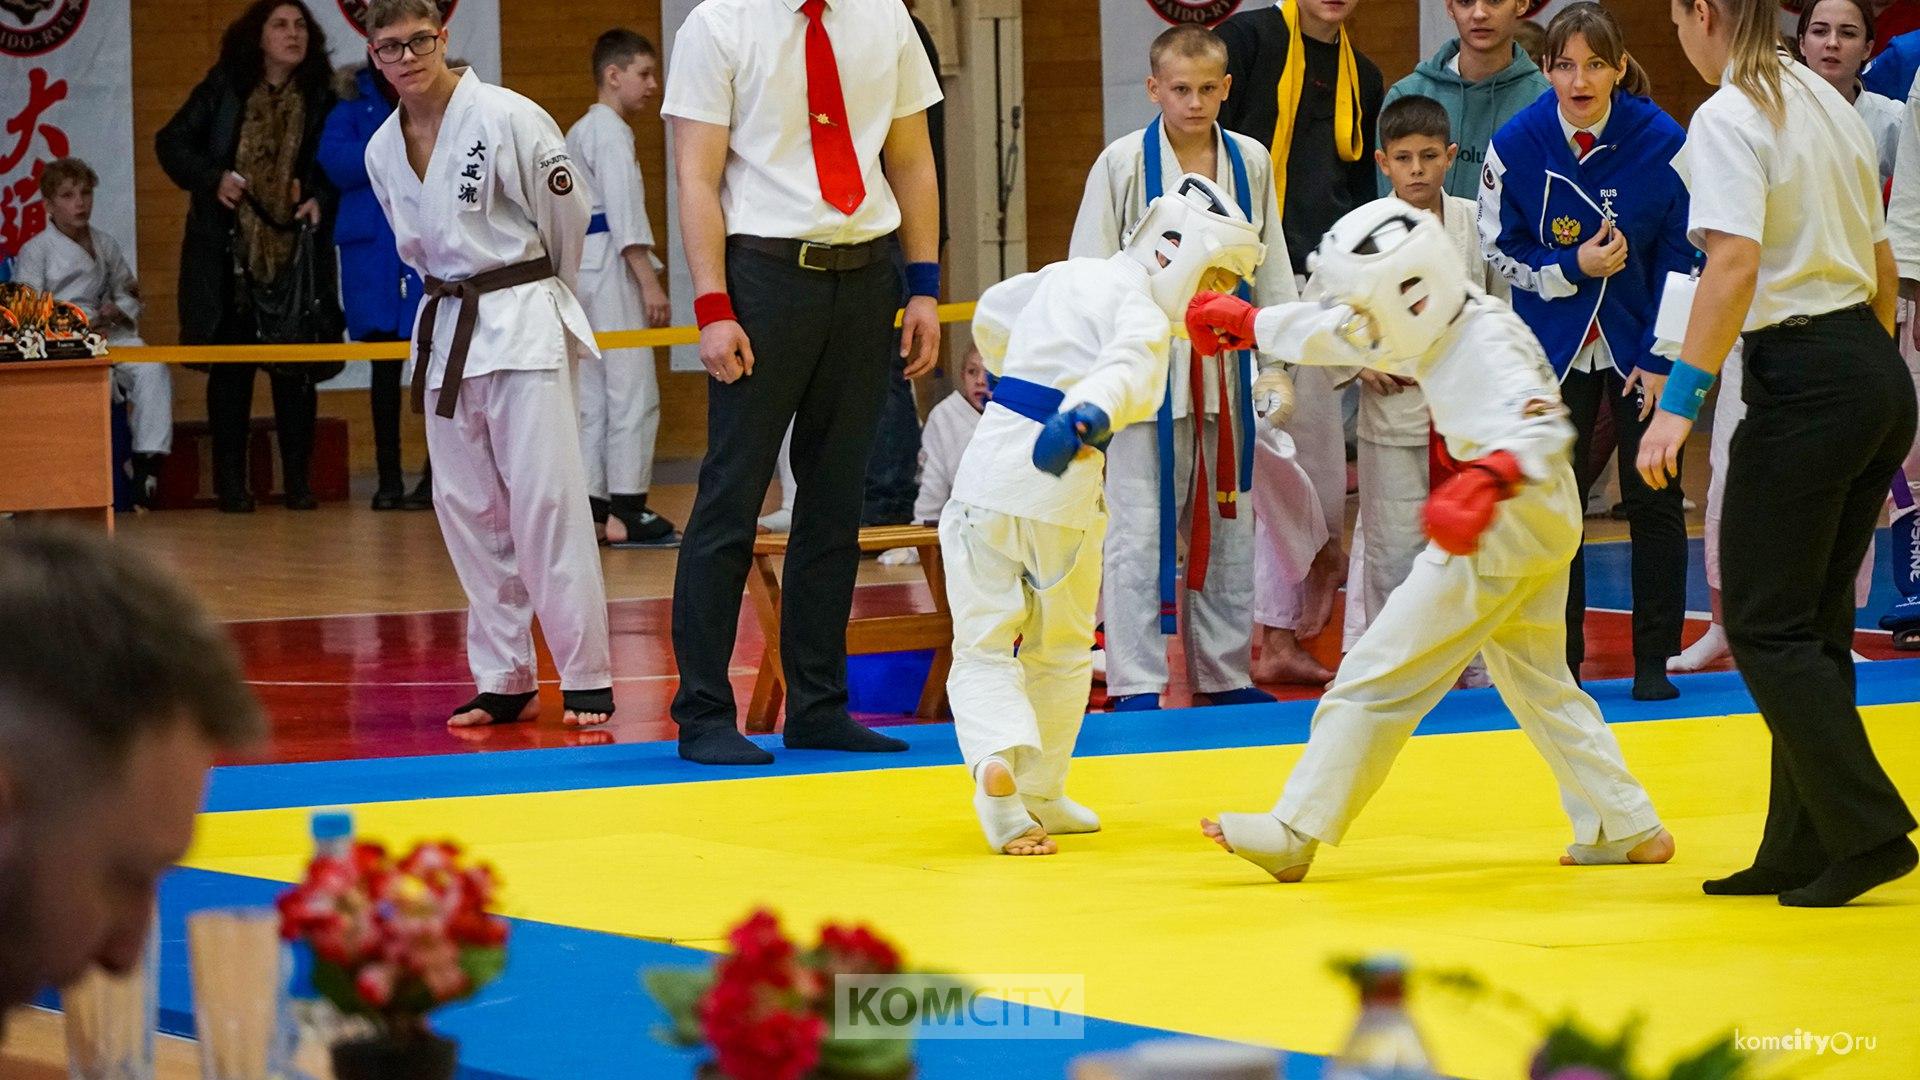 Триста бойцов собрались в «Орлане» на турнире по джиу-джитсу «Комсомольск Open»